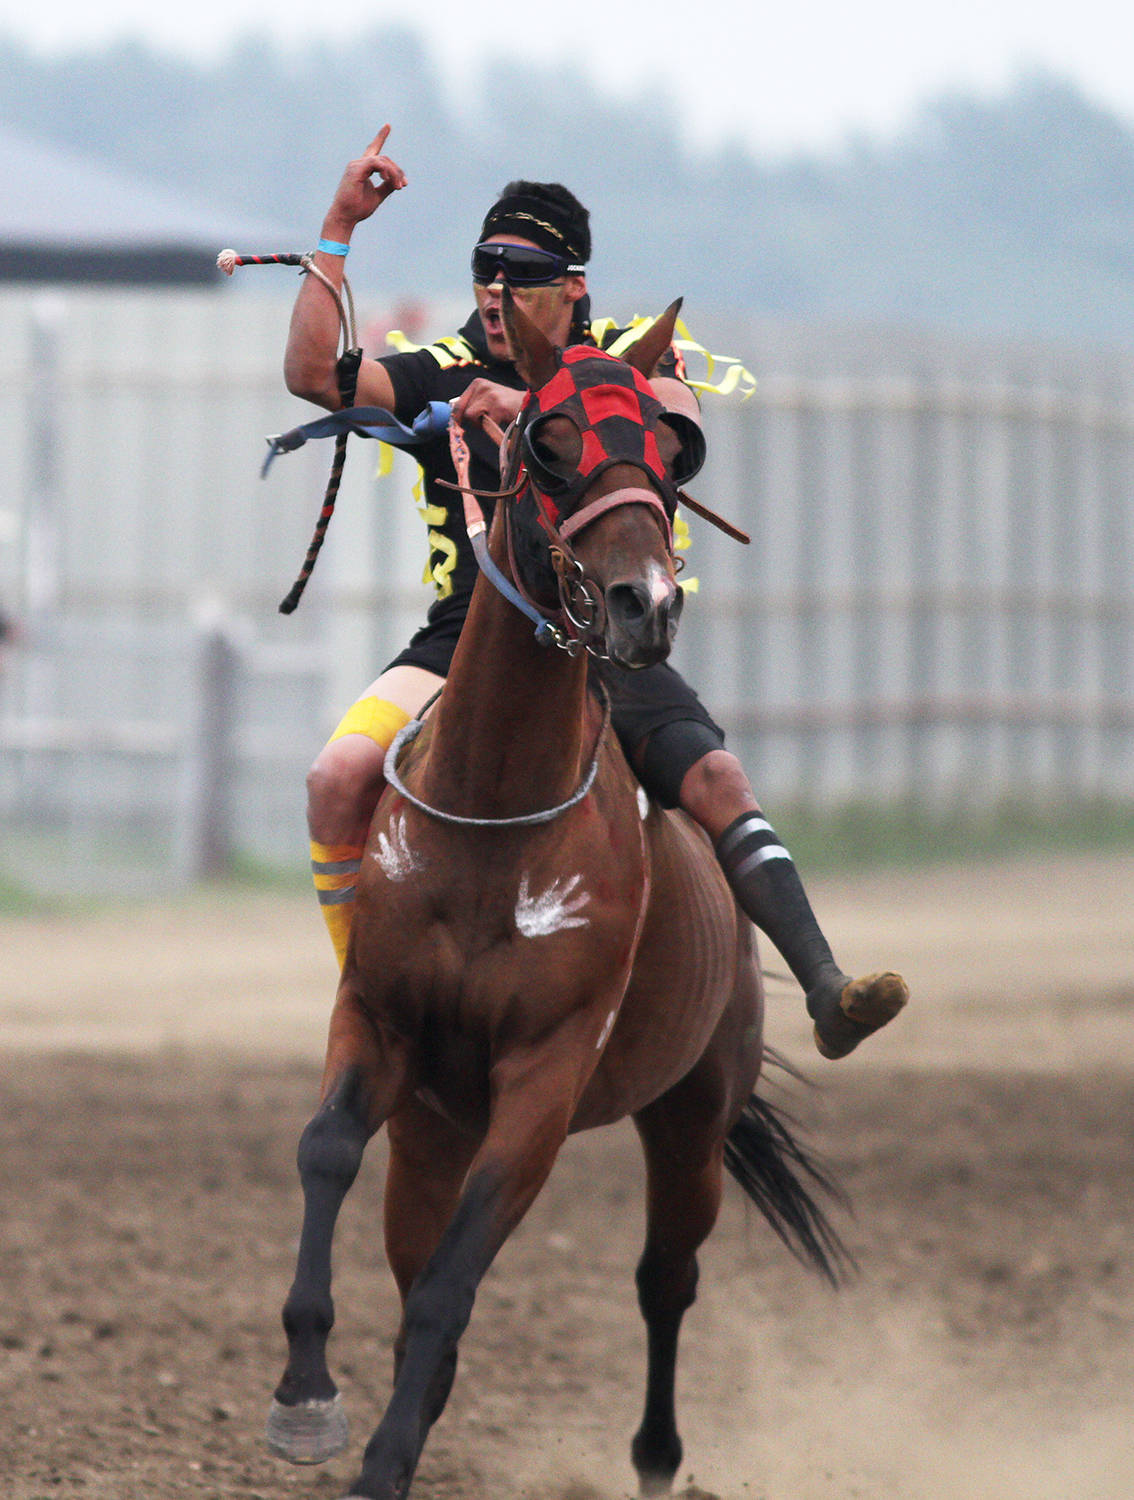 13288231_web1_180829-BAS-indian-horse-races_3